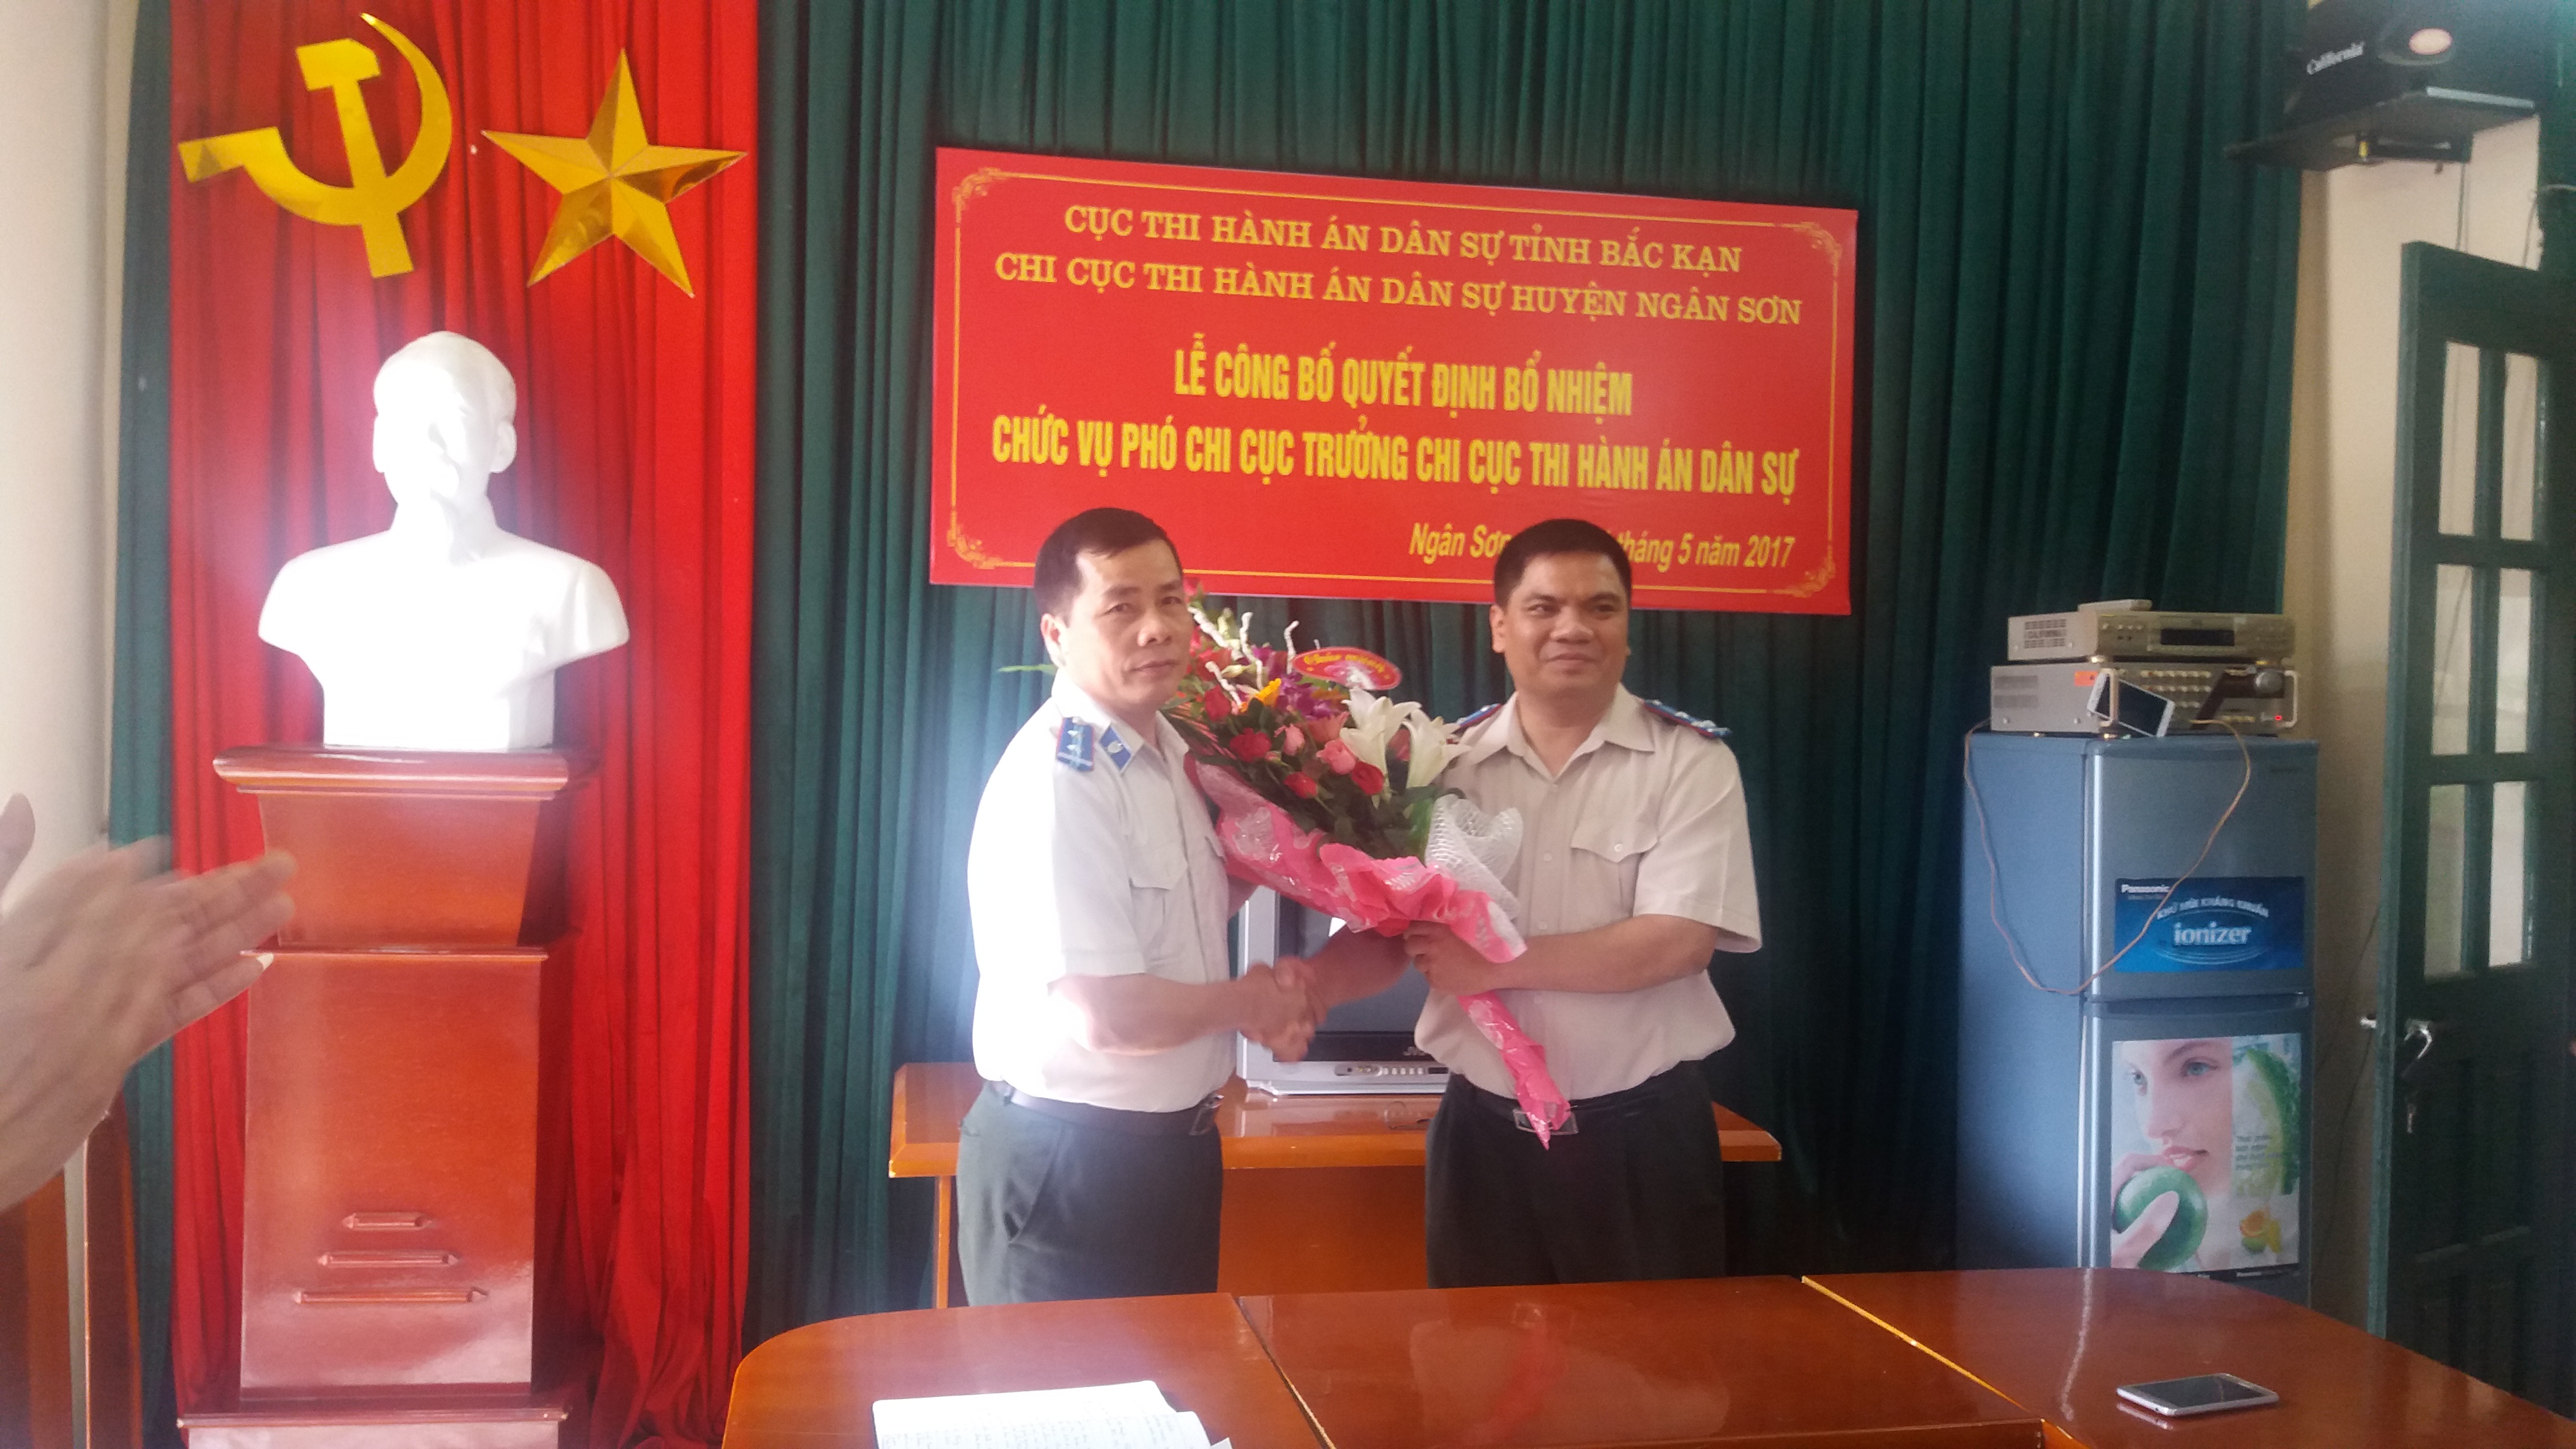 Công bố và trao quyết định bổ nhiệm chức vụ Phó Chi cục trưởng Chi cục Thi hành án dân sự huyện Ngân Sơn